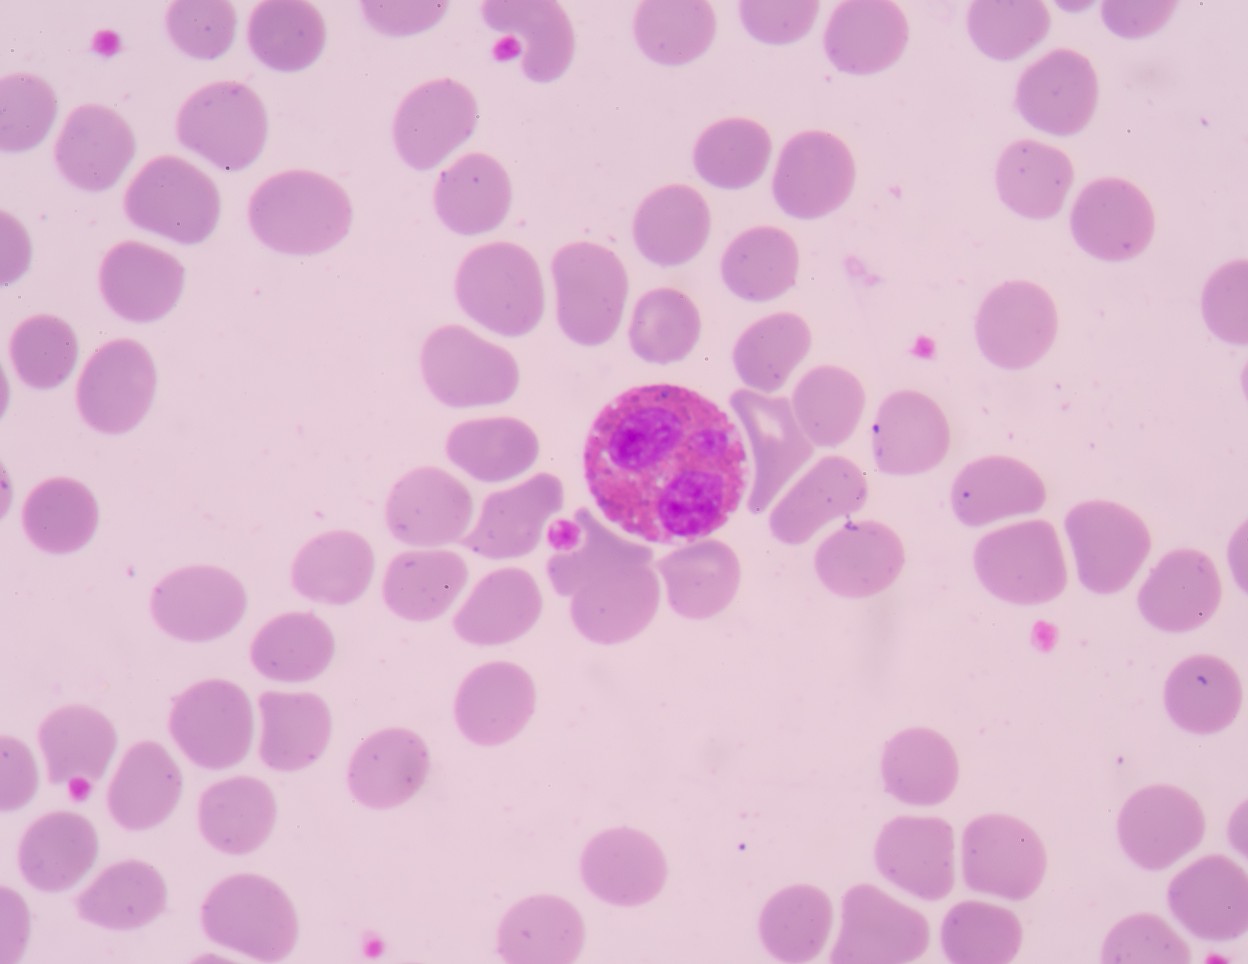 immune cells in Sjogren's